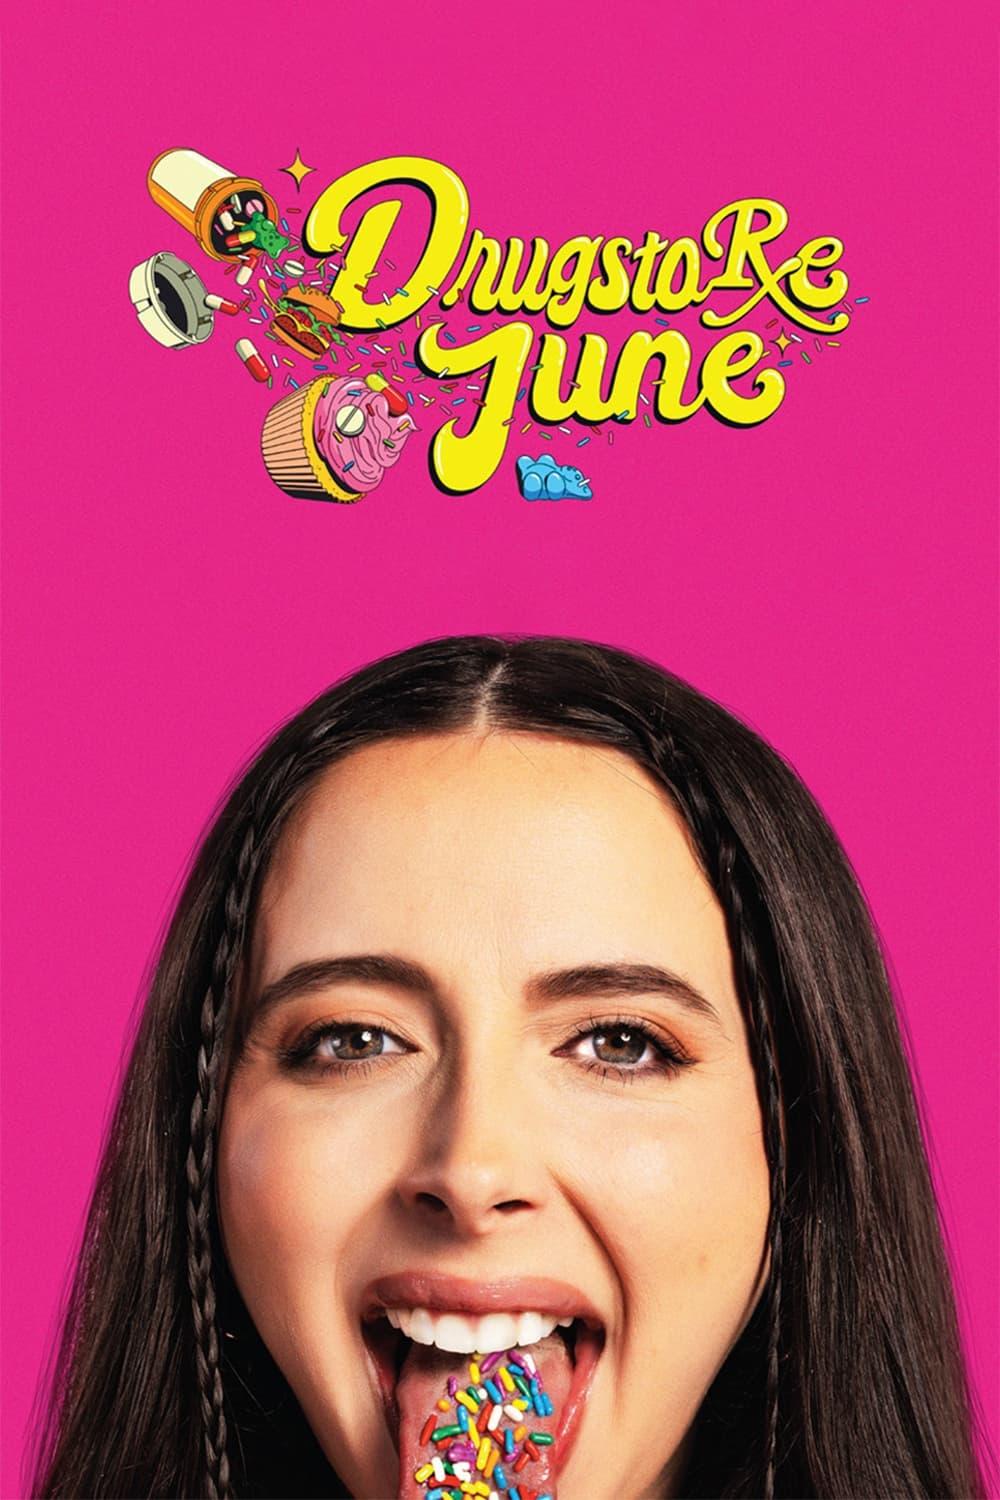 Drugstore June poster